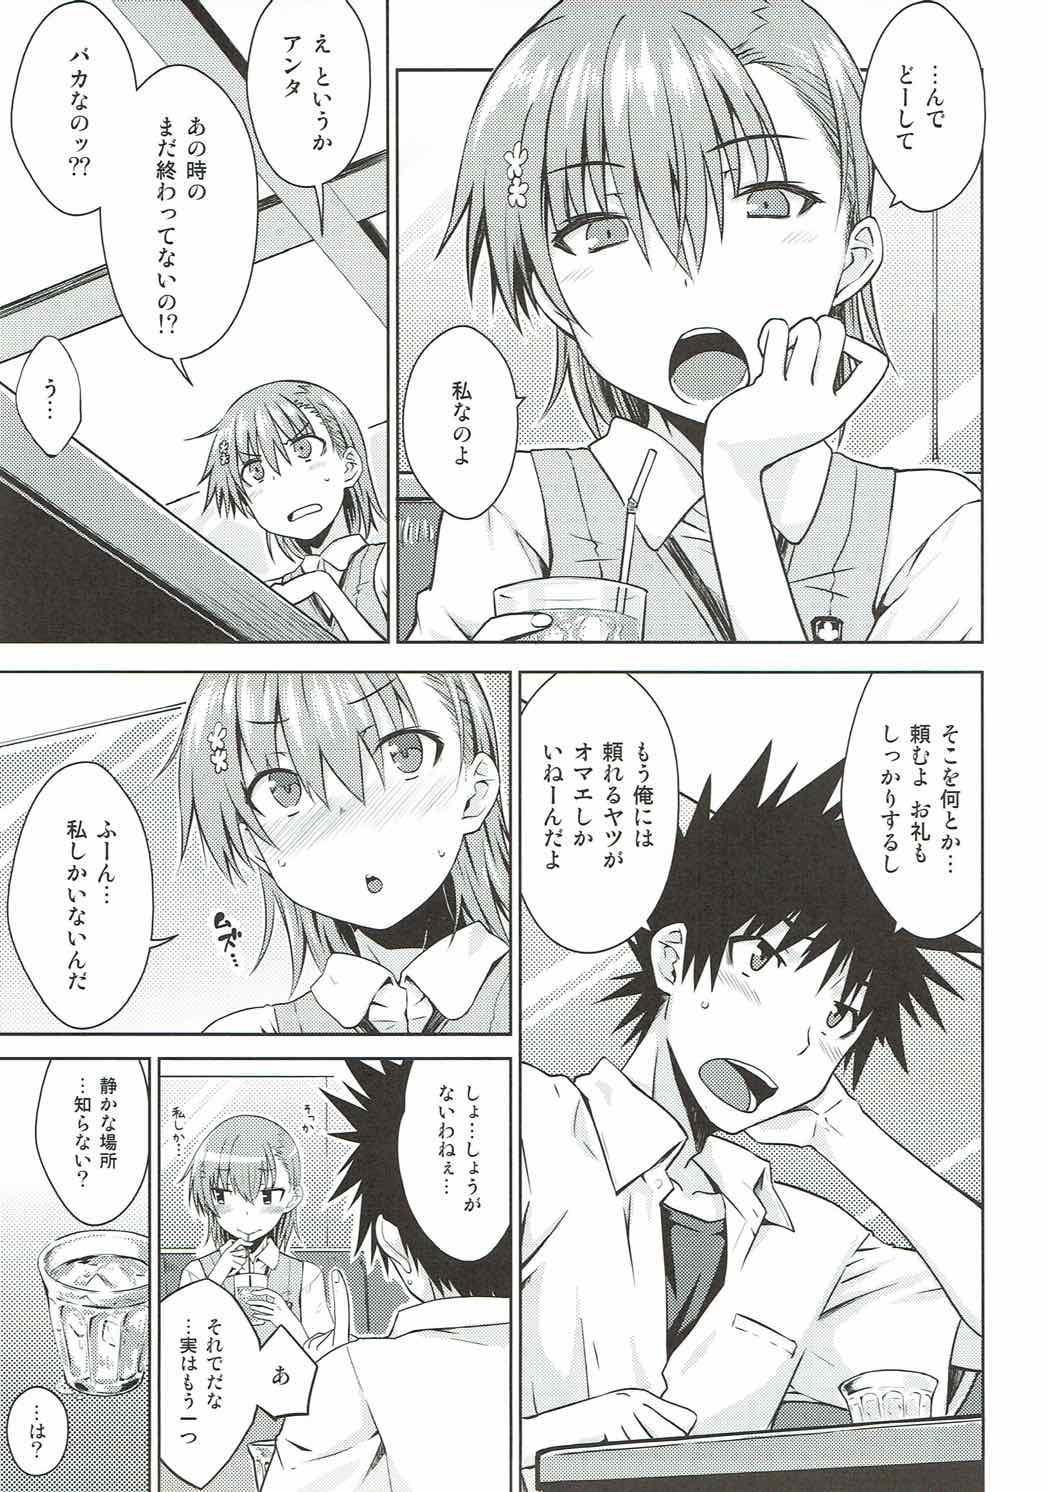 Omegle Natsuyasumi no Shukudai - Toaru kagaku no railgun Bisexual - Page 6